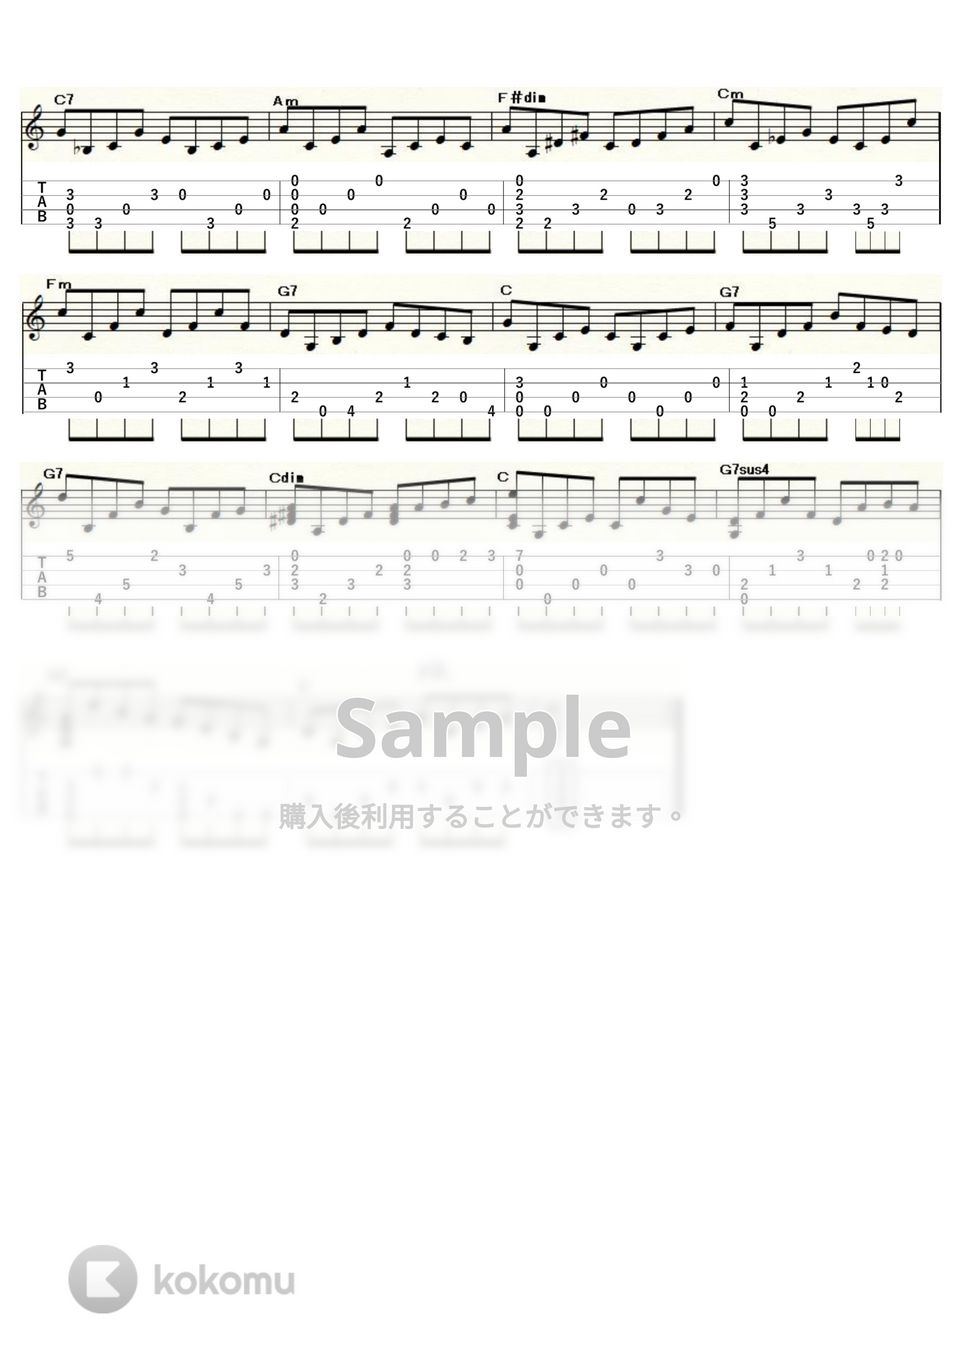 グノー - グノーのアヴェ・マリア (ｳｸﾚﾚｿﾛ / Low-G / 中級) by ukulelepapa